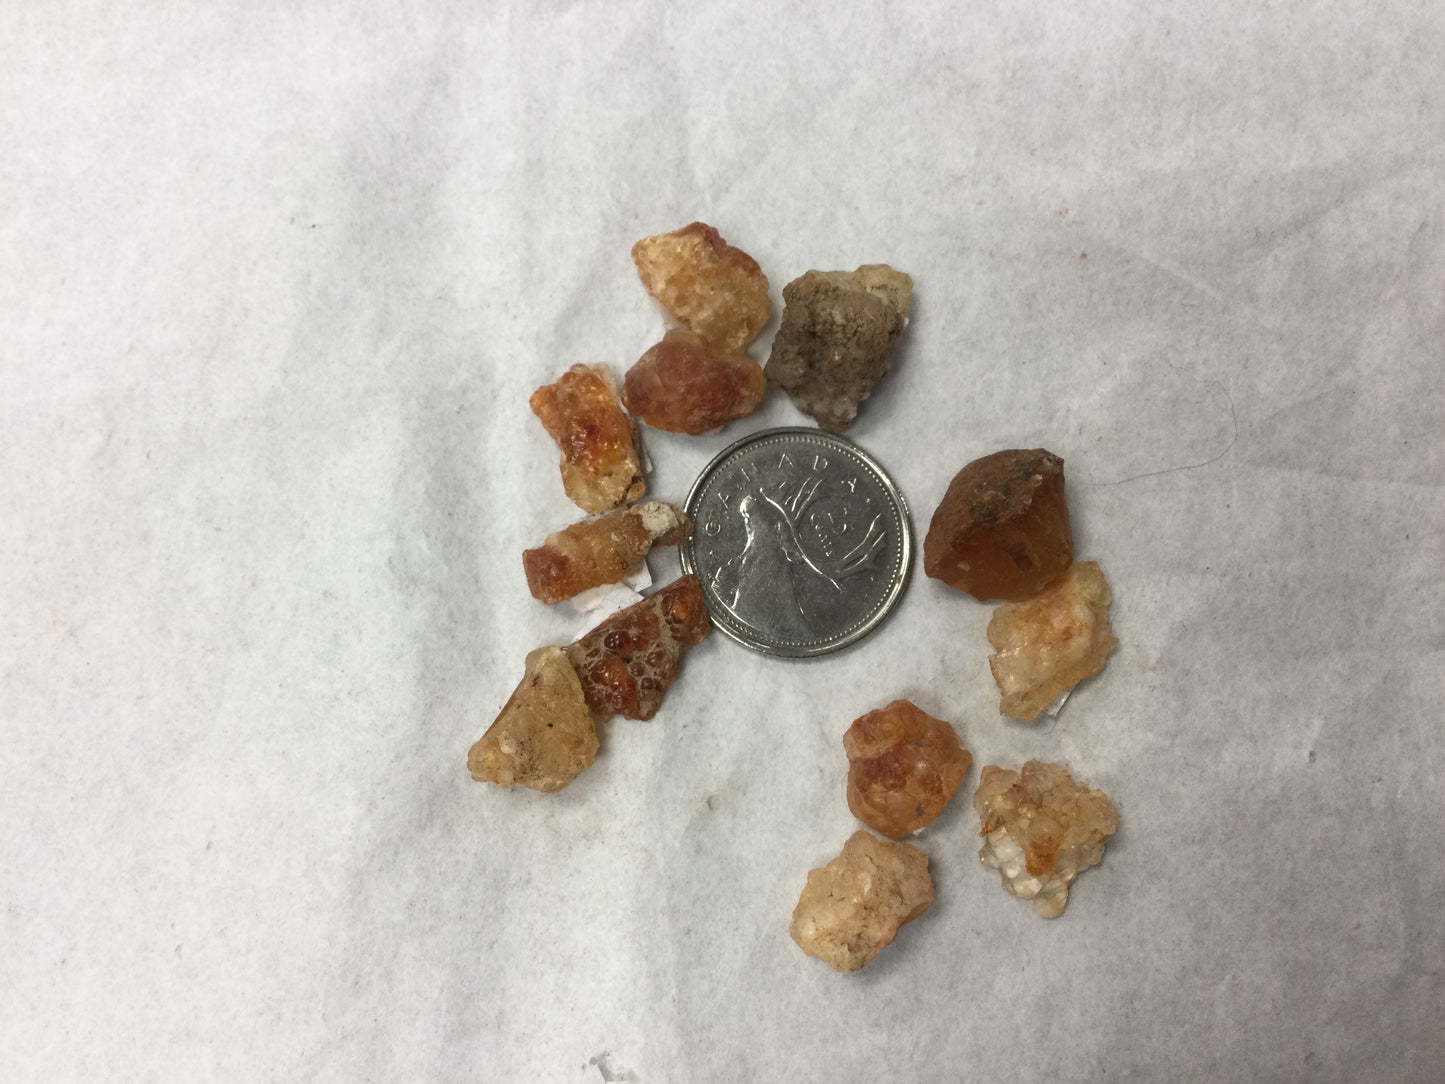 Hyalite Opal 1g (San Luis Potosi, Mexico)